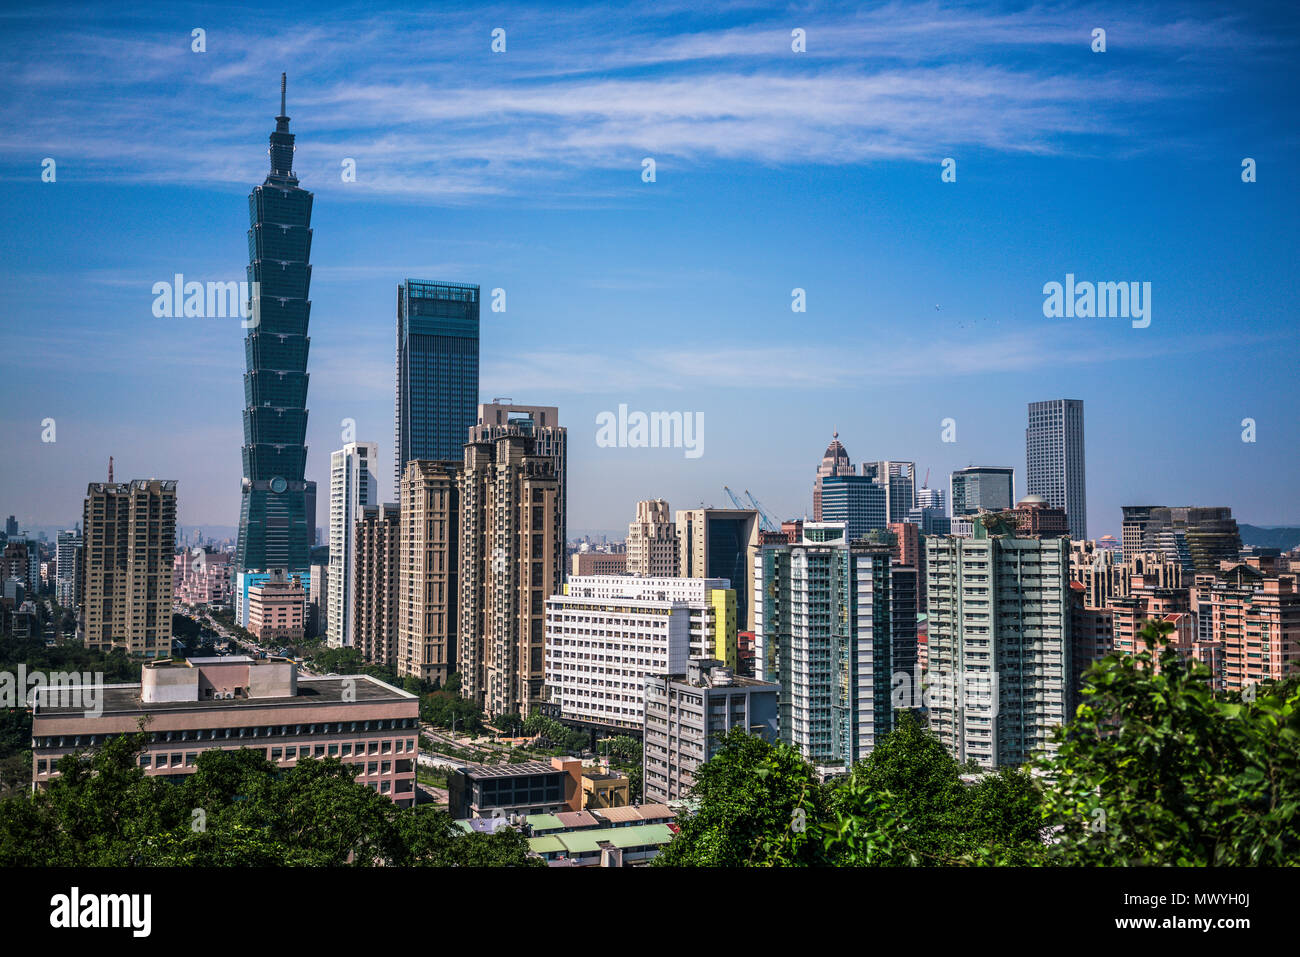 Taipei city skyline with Taipei 101 building viewed from Elephant mountain in Taiwan Stock Photo